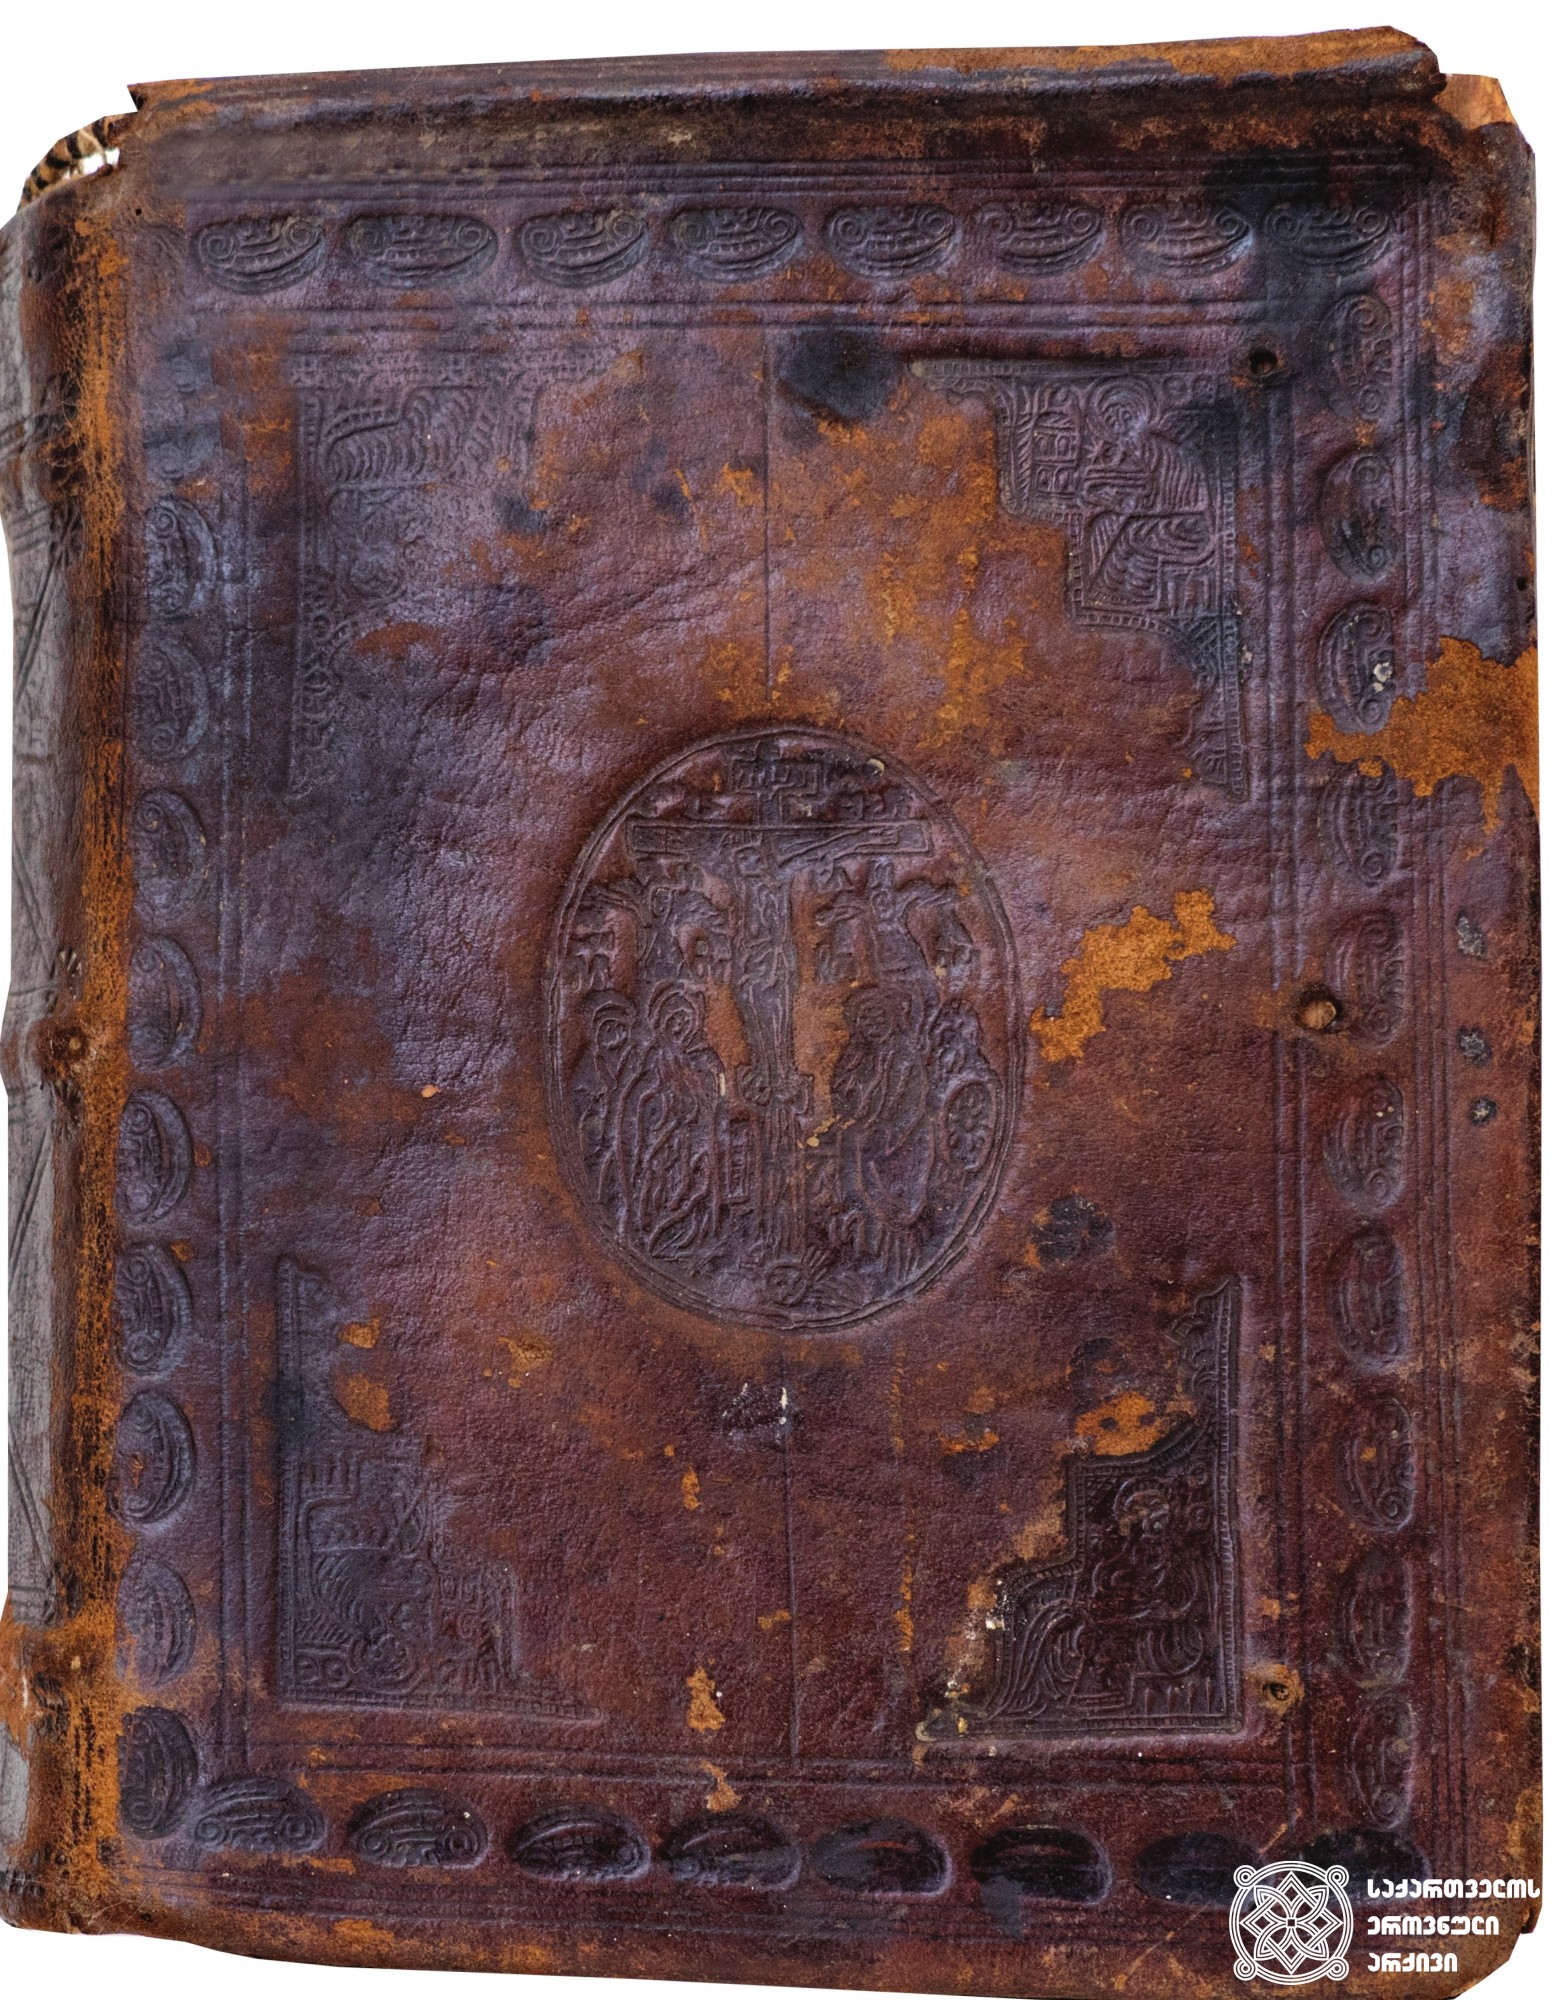 სახარების ტვიფრული ყდა
მოსკოვი, 1739. იოსებ სამებელის სტამბა. მბეჭდავთა ზედამდგომელი: ქრისტეფორე გურამიშვილი
<br>
Embossed cover <br>
Moscow, 1739. Printing House of Ioseb Samebeli. Supervisor of printers: Kristephore Guramishvili